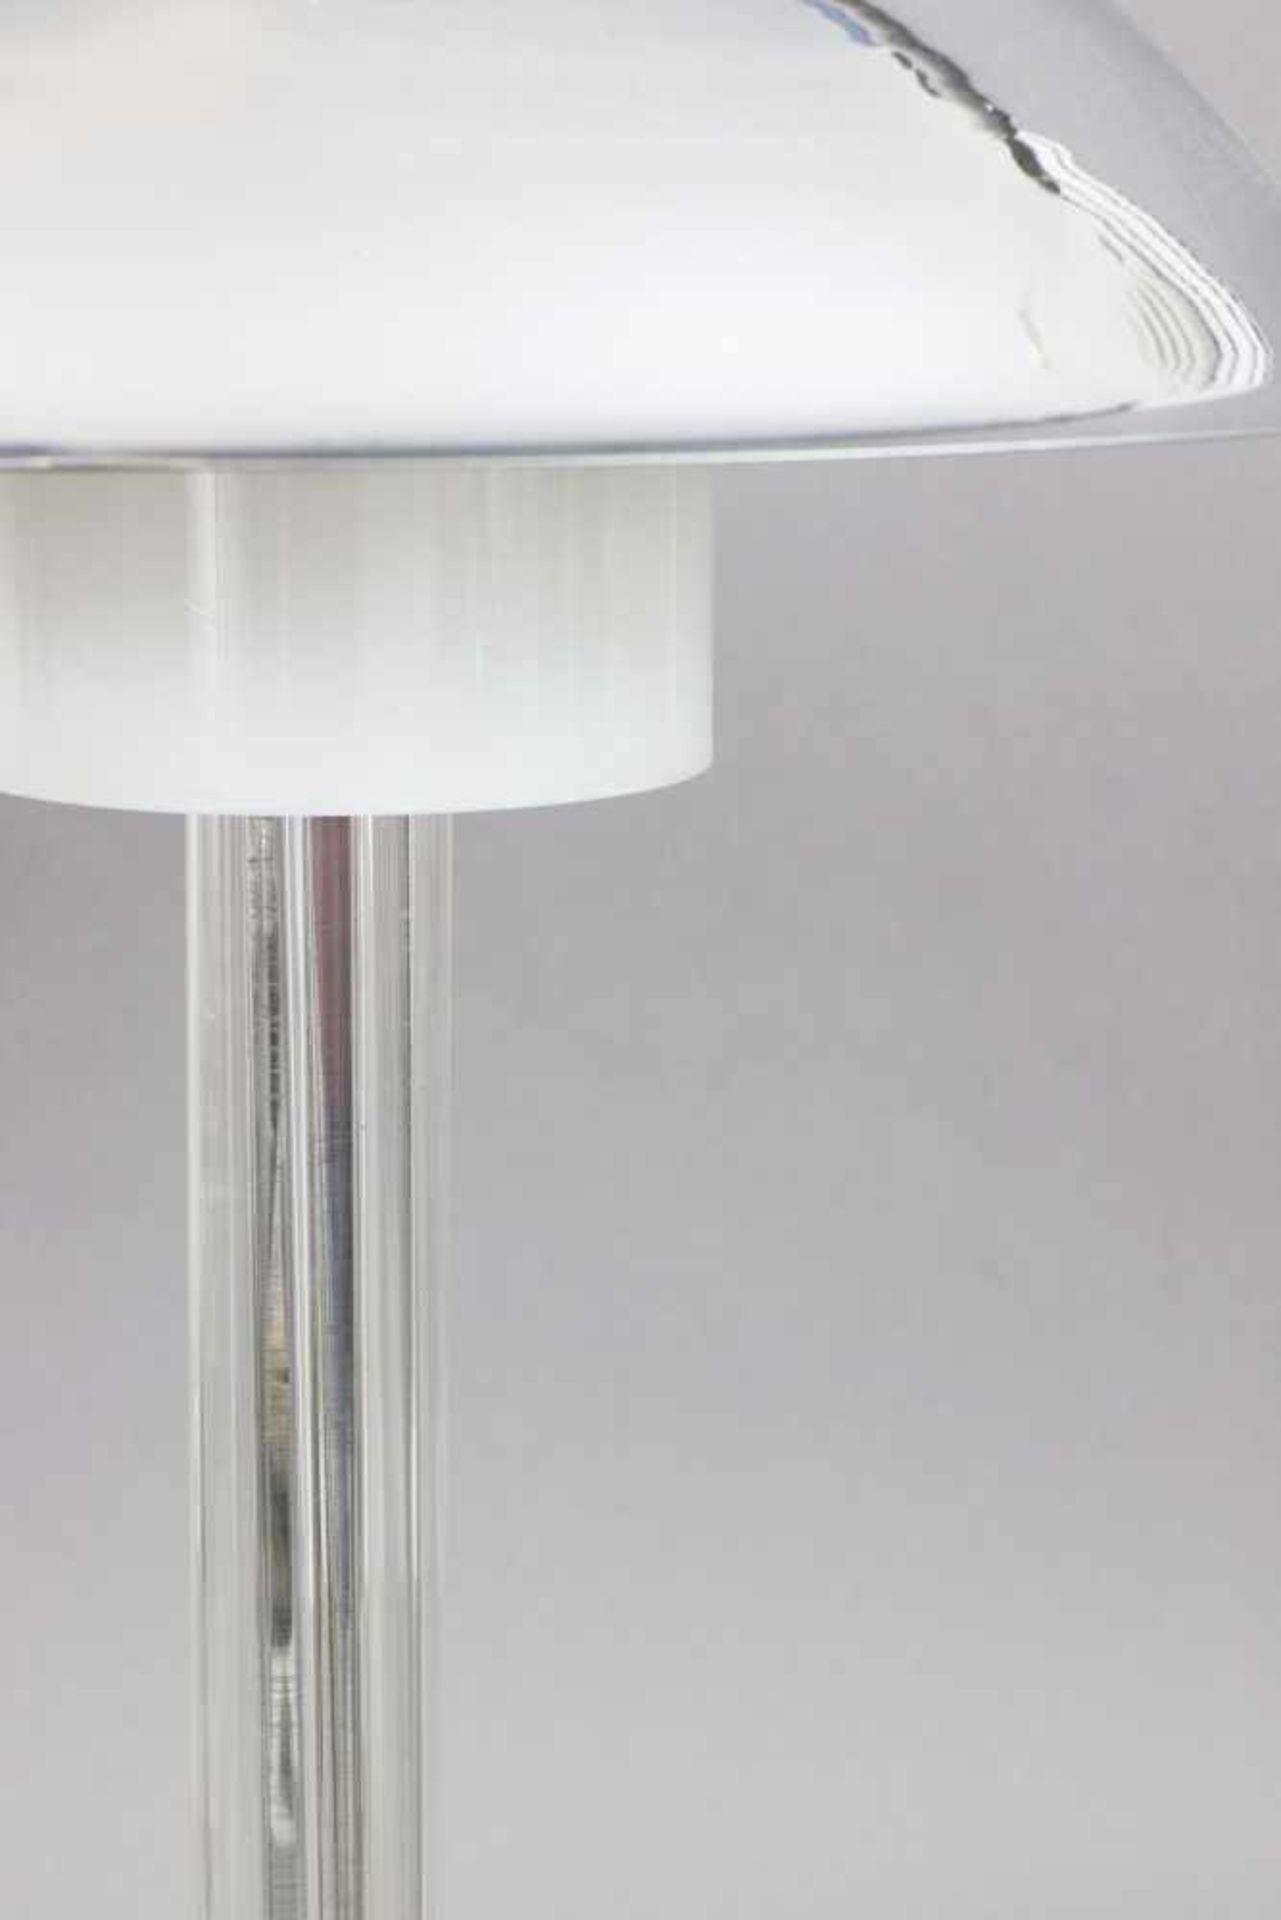 Tischlampe im Stile des Art Deco verchromtes Metall und farbloses Glas, pilzförmiger (Kuppel-) - Bild 2 aus 2